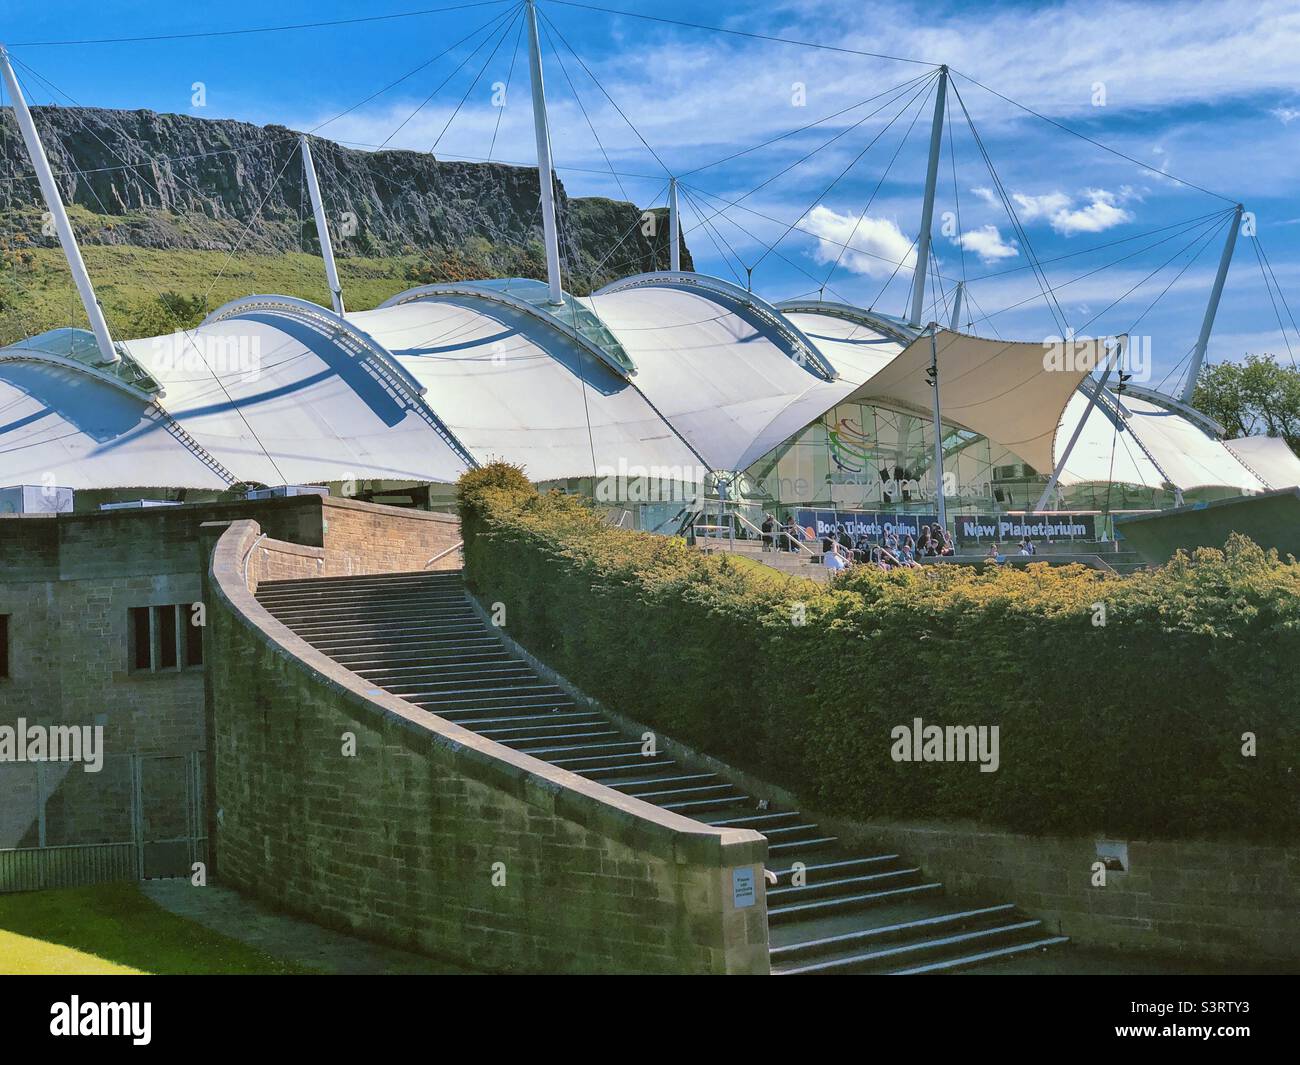 Dynamic Earth, Edimburgo, Scozia in una giornata di sole con cielo blu. Attrazione per famiglie all'avanguardia che porta i visitatori attraverso la storia dal Big Bang ai giorni nostri. Salisbury Crags sullo sfondo. Foto Stock